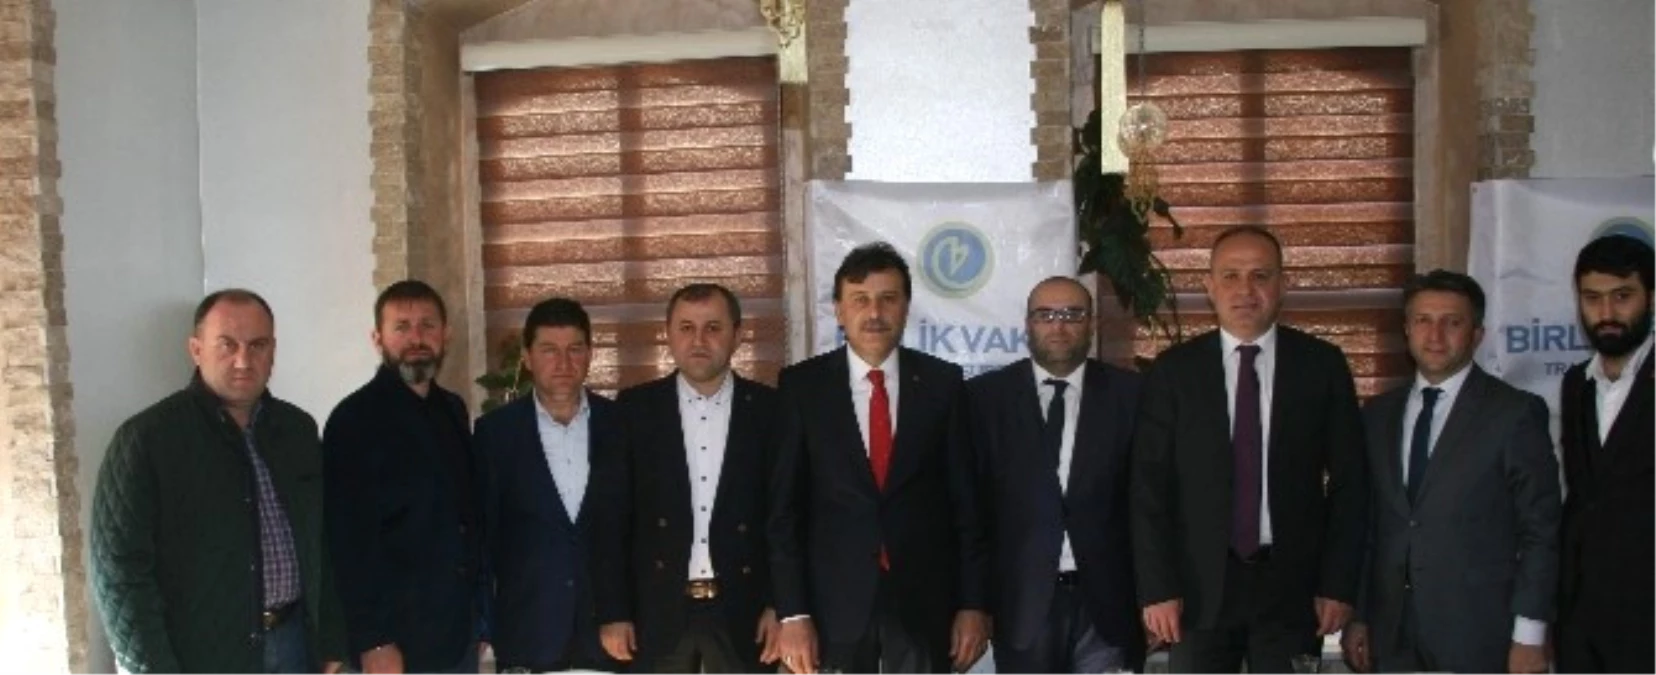 Birlik Vakfı Trabzon Şubesi, Yapacakları Faaliyetlerini Anlattı